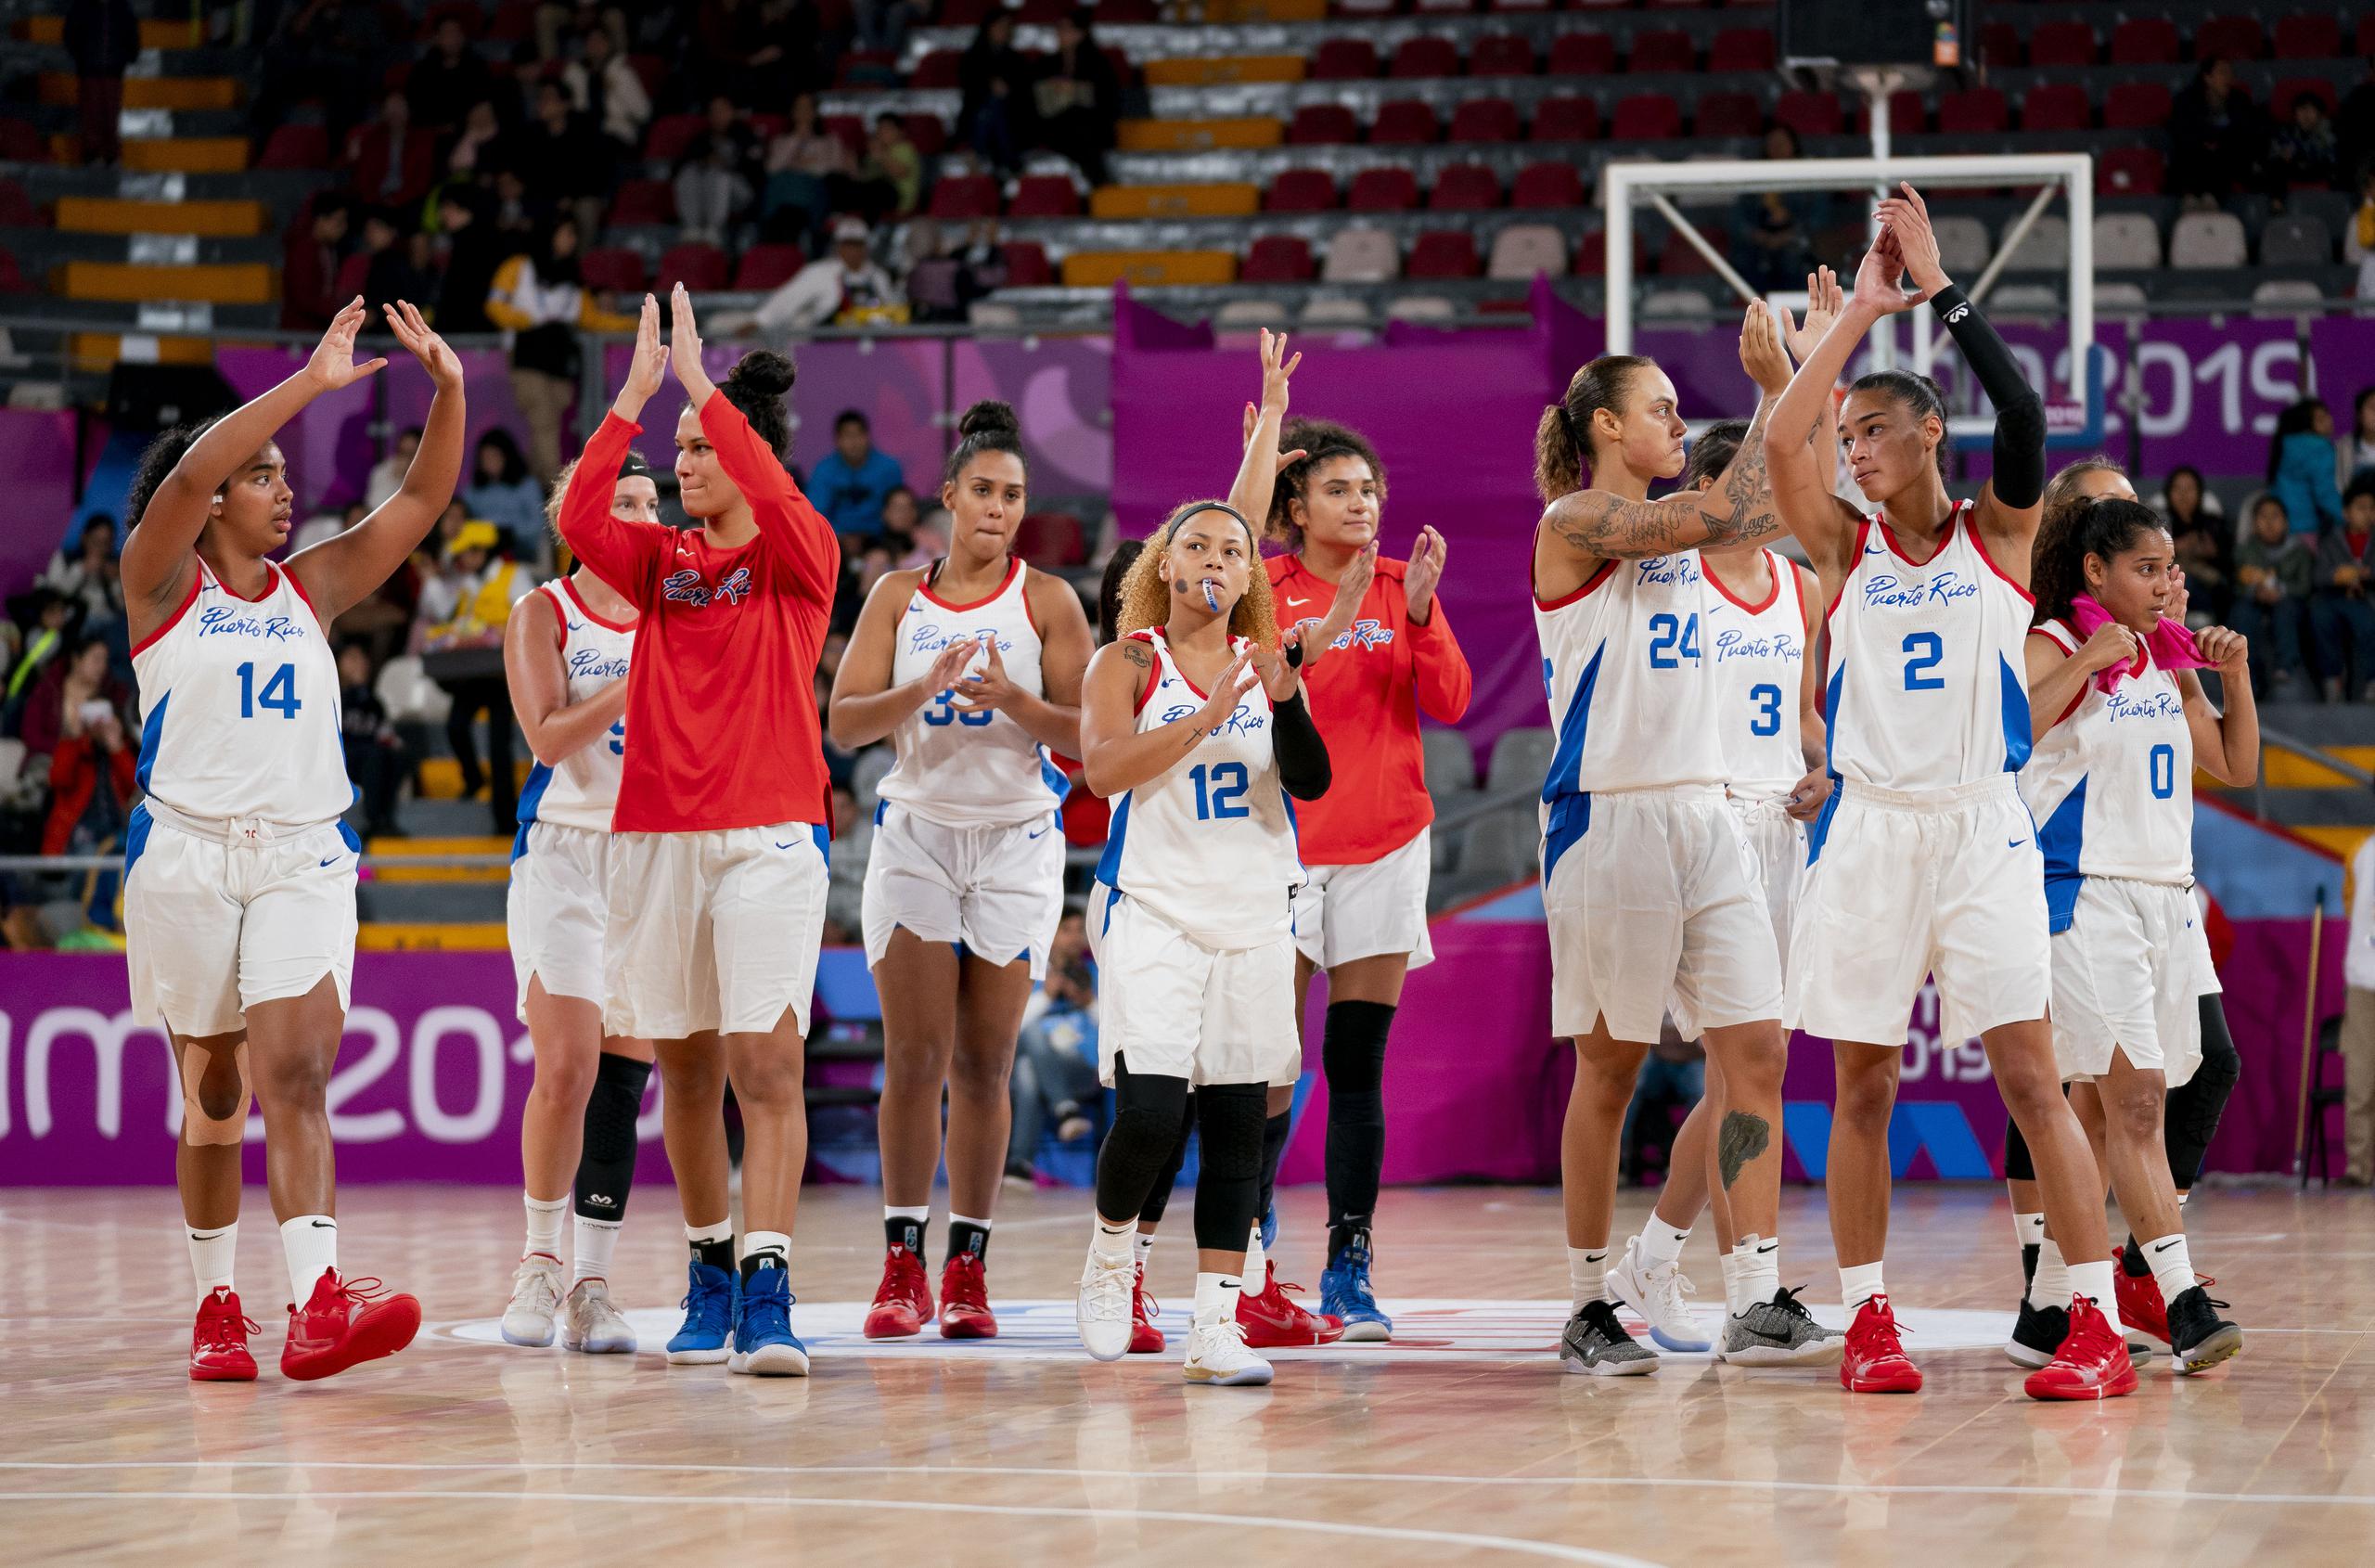 Entre los avances de la Selección Nacional femenina de baloncesto está su cualificación y participación en sus primeros juegos olímpicos en Tokio 2020.